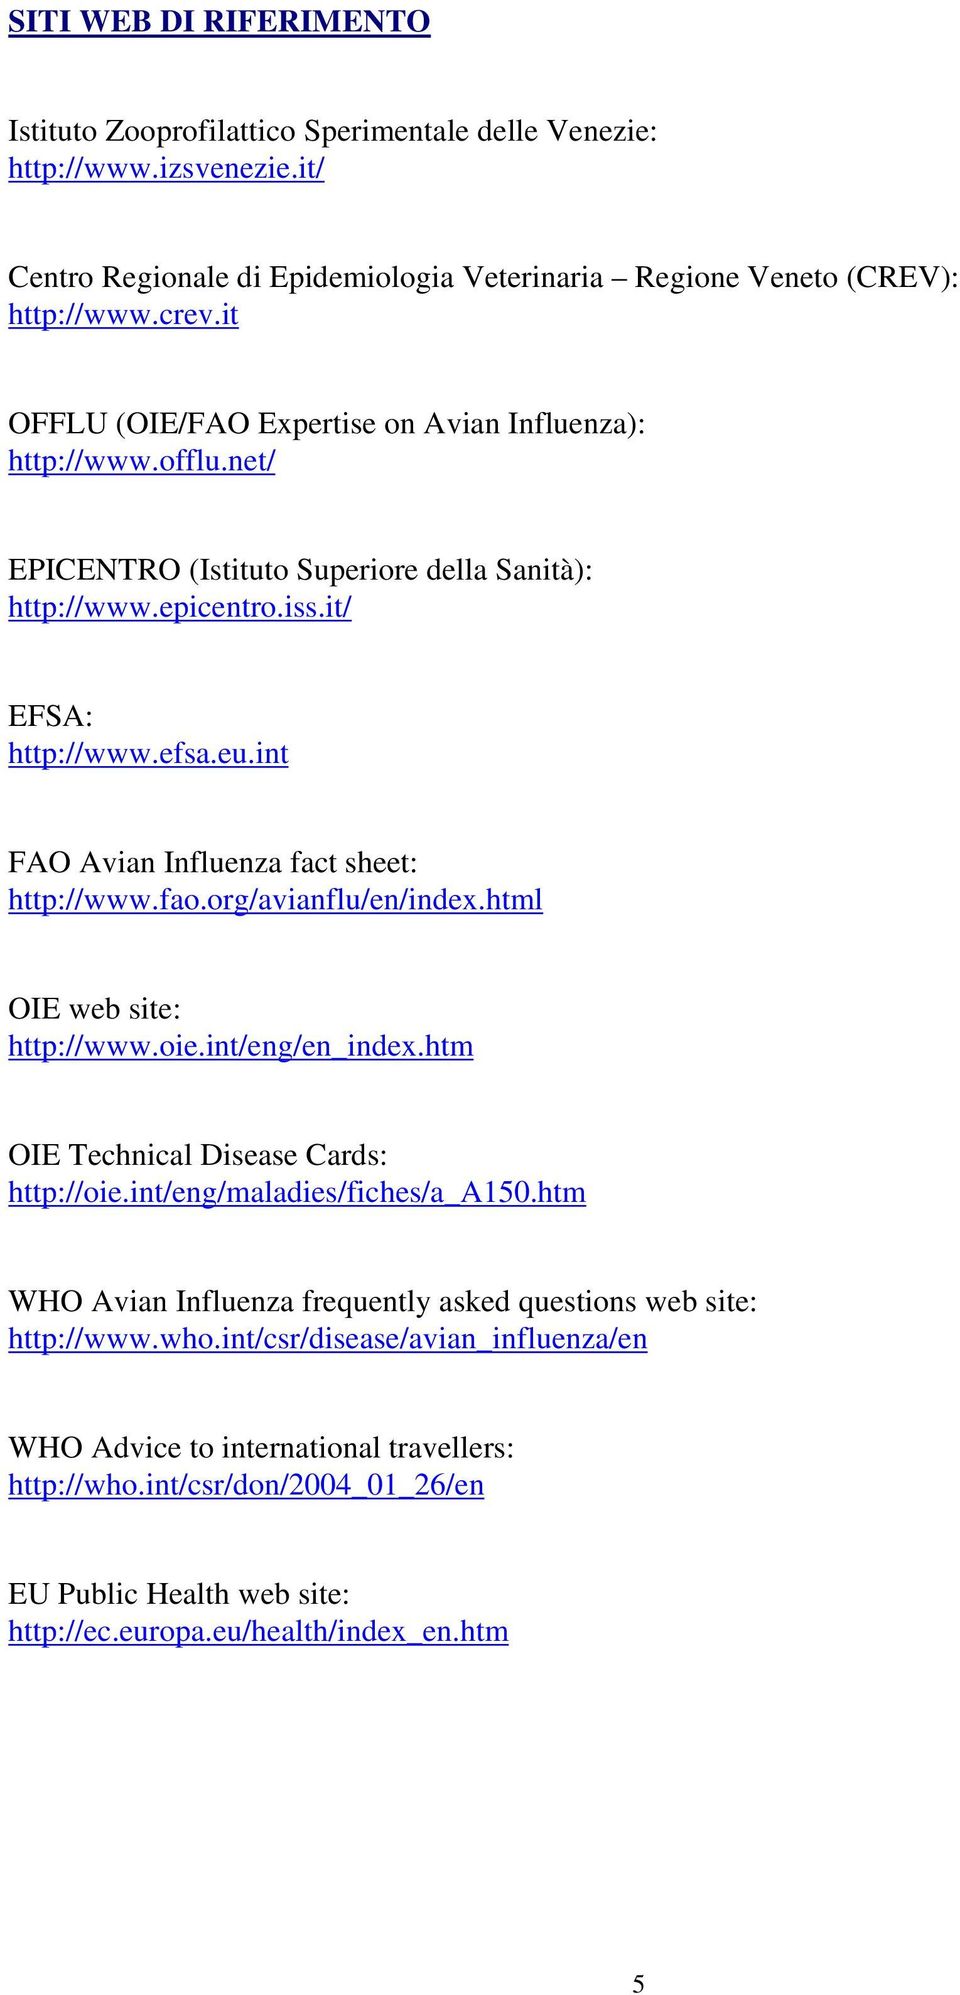 int FAO Avian Influenza fact sheet: http://www.fao.org/avianflu/en/index.html OIE web site: http://www.oie.int/eng/en_index.htm OIE Technical Disease Cards: http://oie.int/eng/maladies/fiches/a_a150.